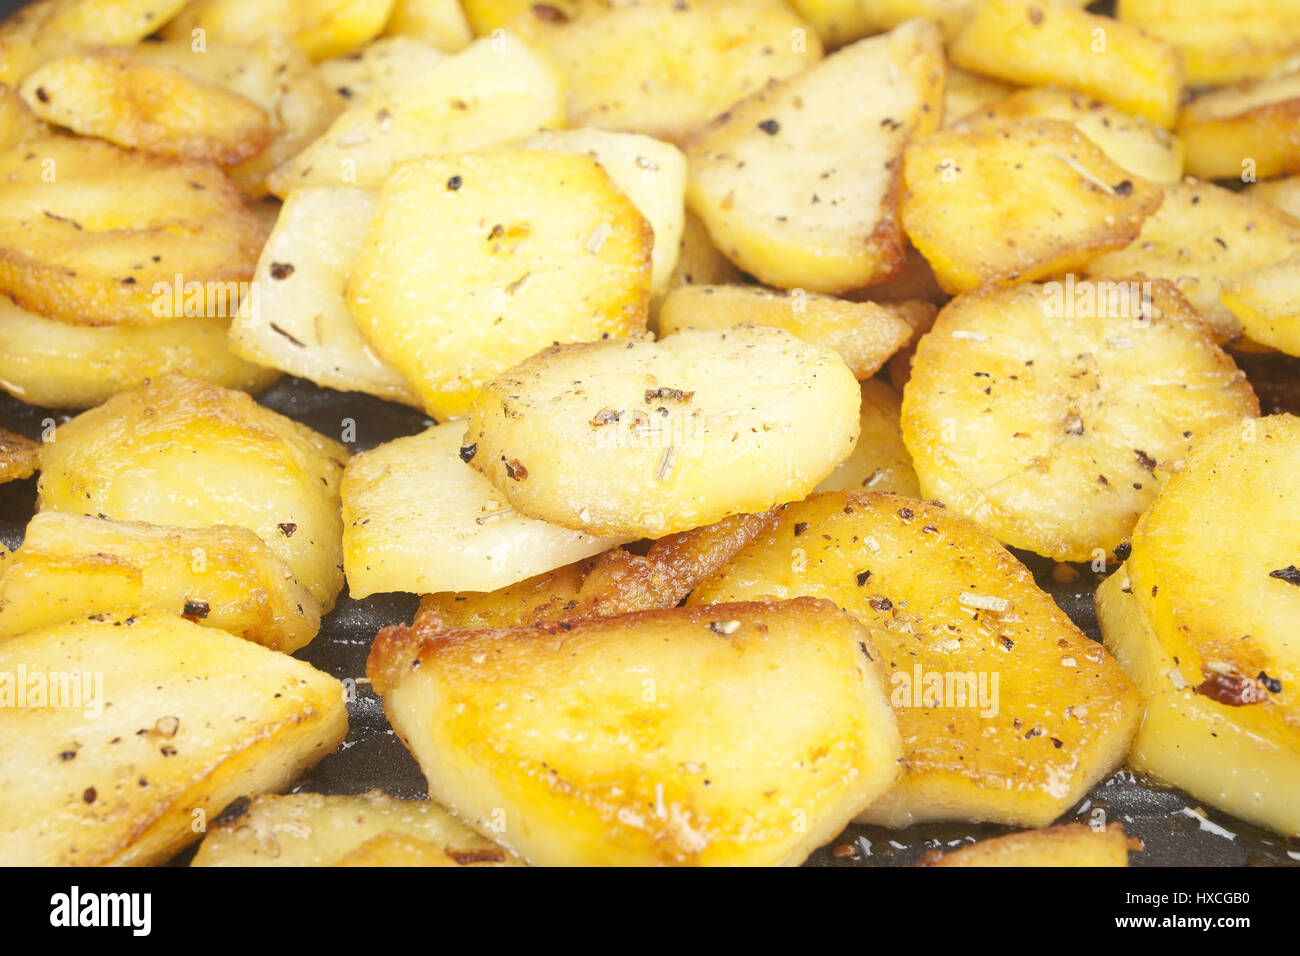 Fried potatoes in a frying pan, Fried potatoes in a pan |, Bratkartoffeln in einer Pfanne |Fried potatoes in a pan| Stock Photo